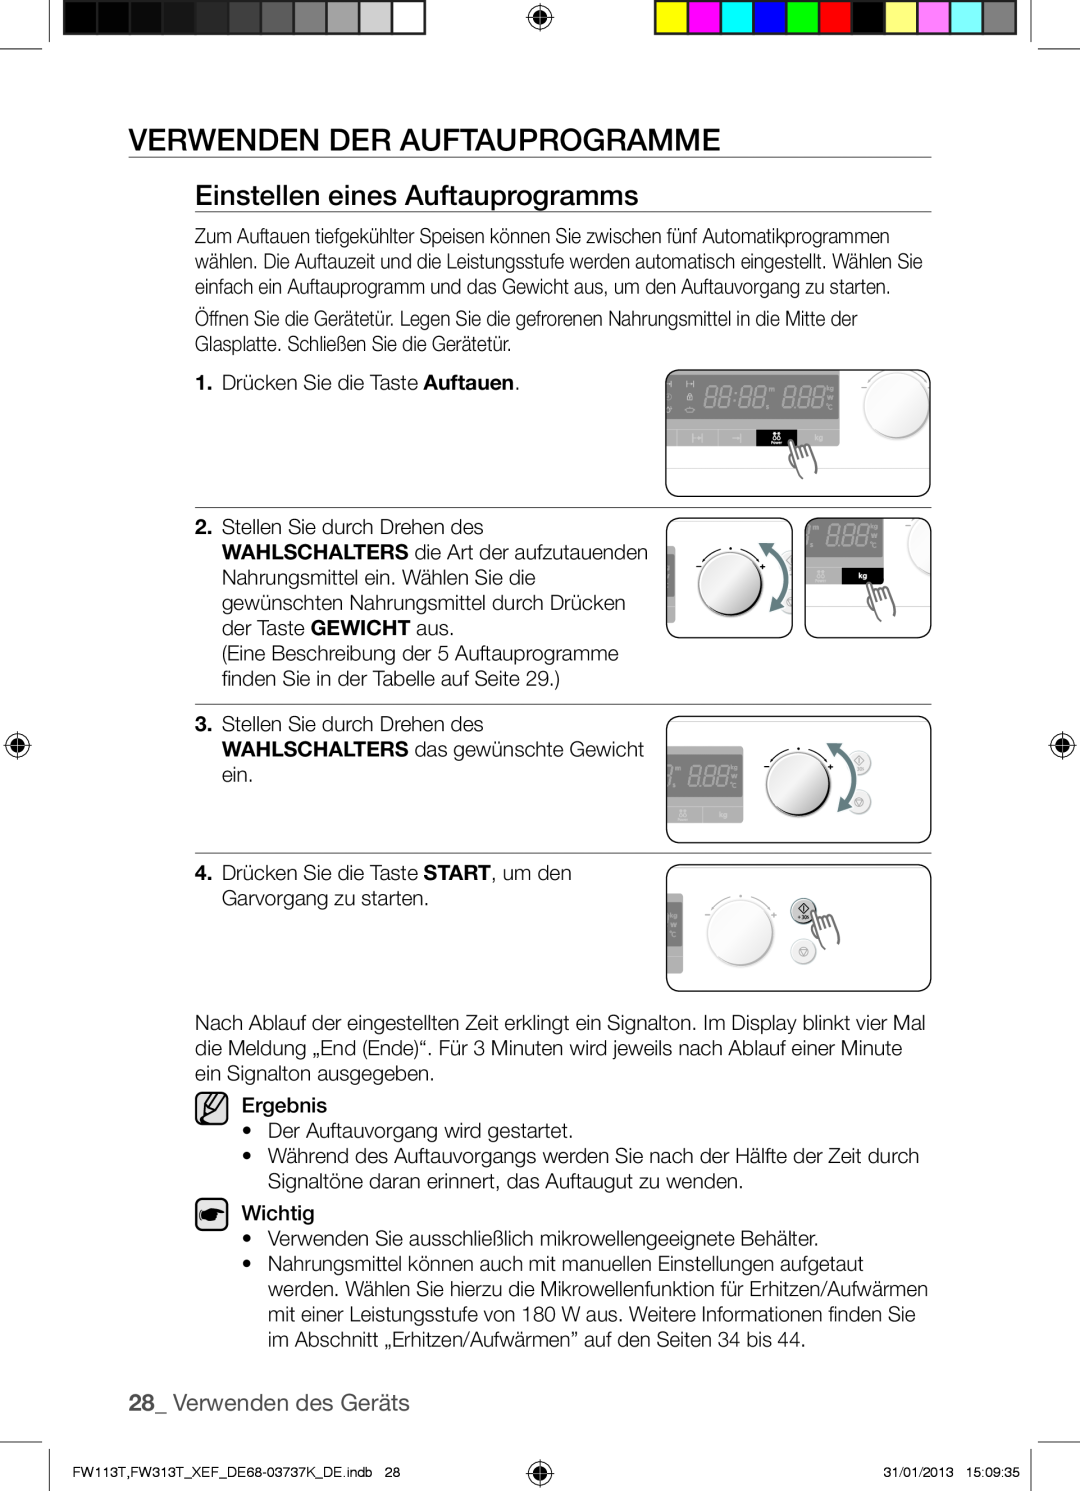 Samsung FW113T002/XEF manual Verwenden Der Auftauprogramme, Einstellen eines Auftauprogramms, Verwenden des Geräts 